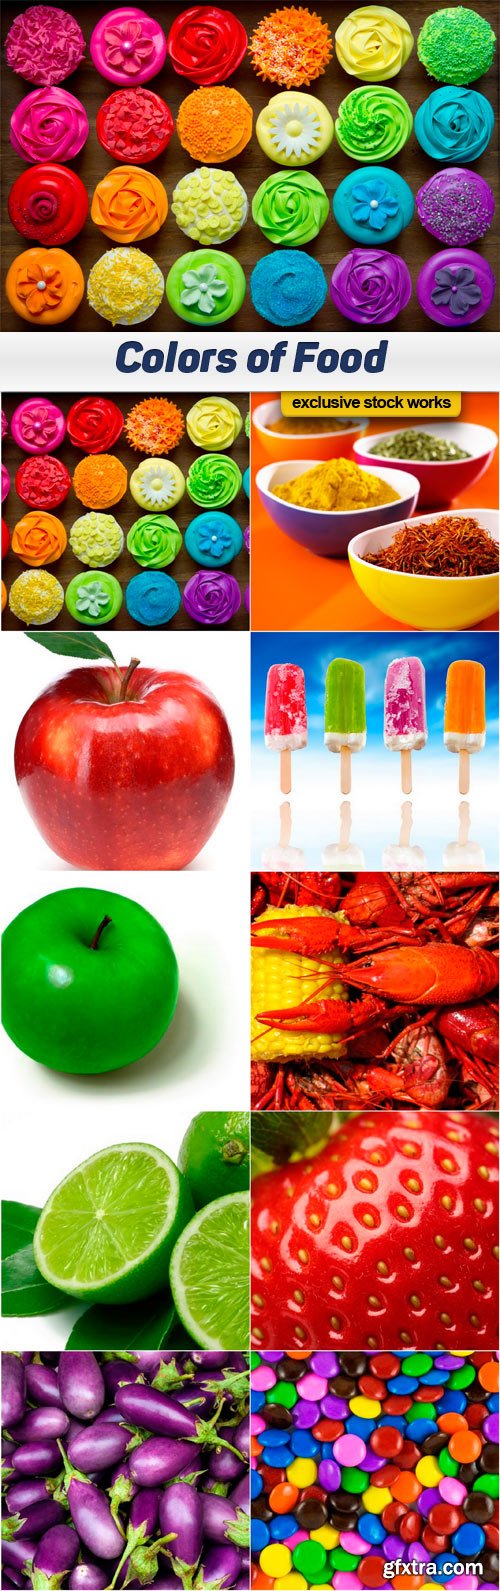 Colors of Food - 10x JPEG